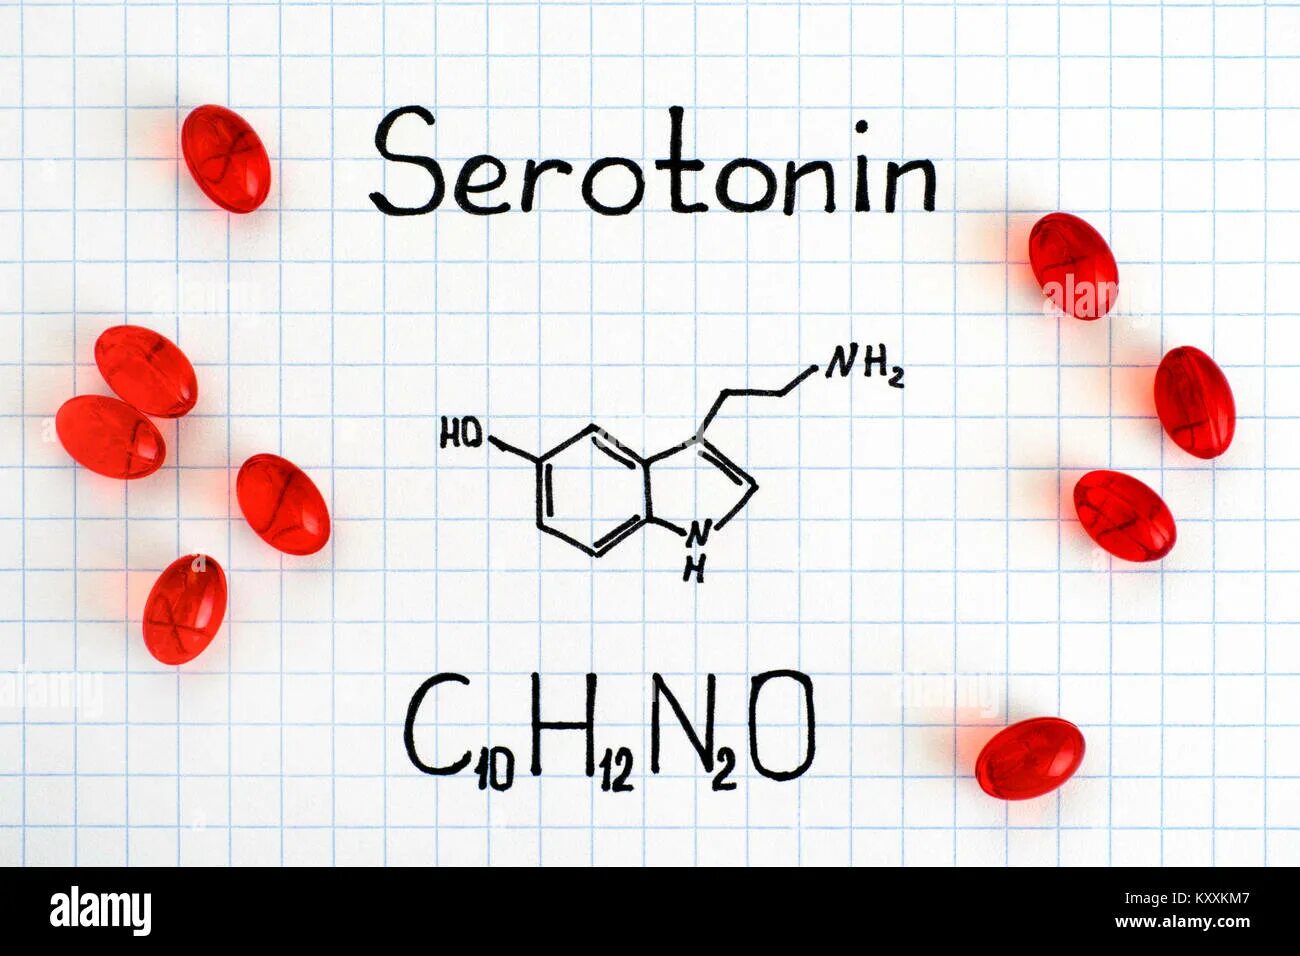 Serotonin рисунок. Серотонин (5-гидрокситриптамин). Химическая формула кончи. Химическая формула сперматозоида.